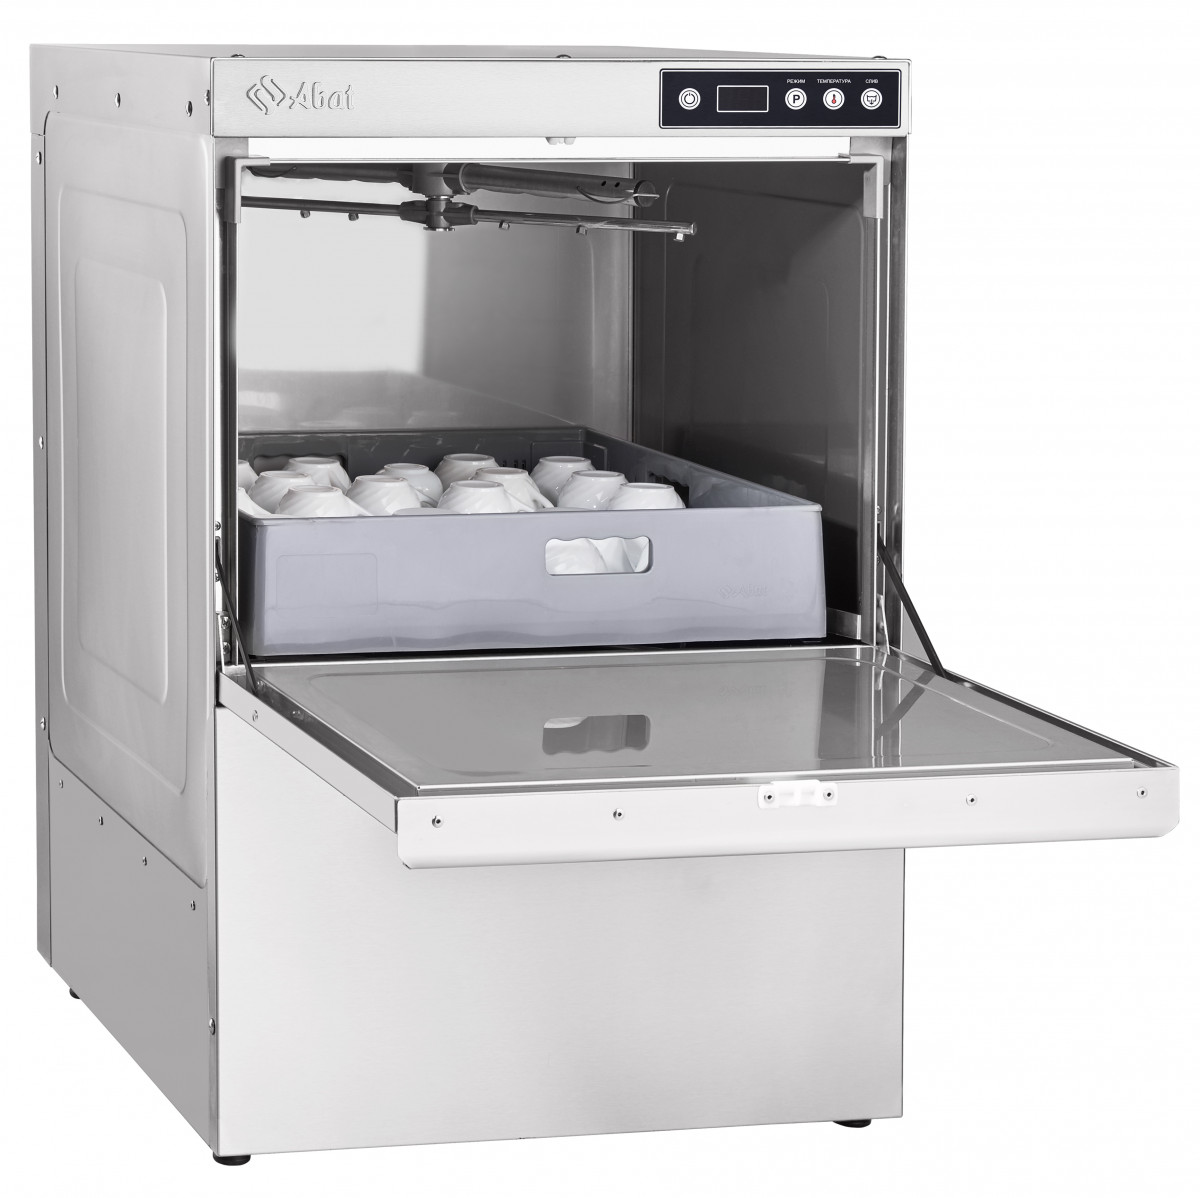 Фронтальная посудомоечная машина МПК-500Ф-01